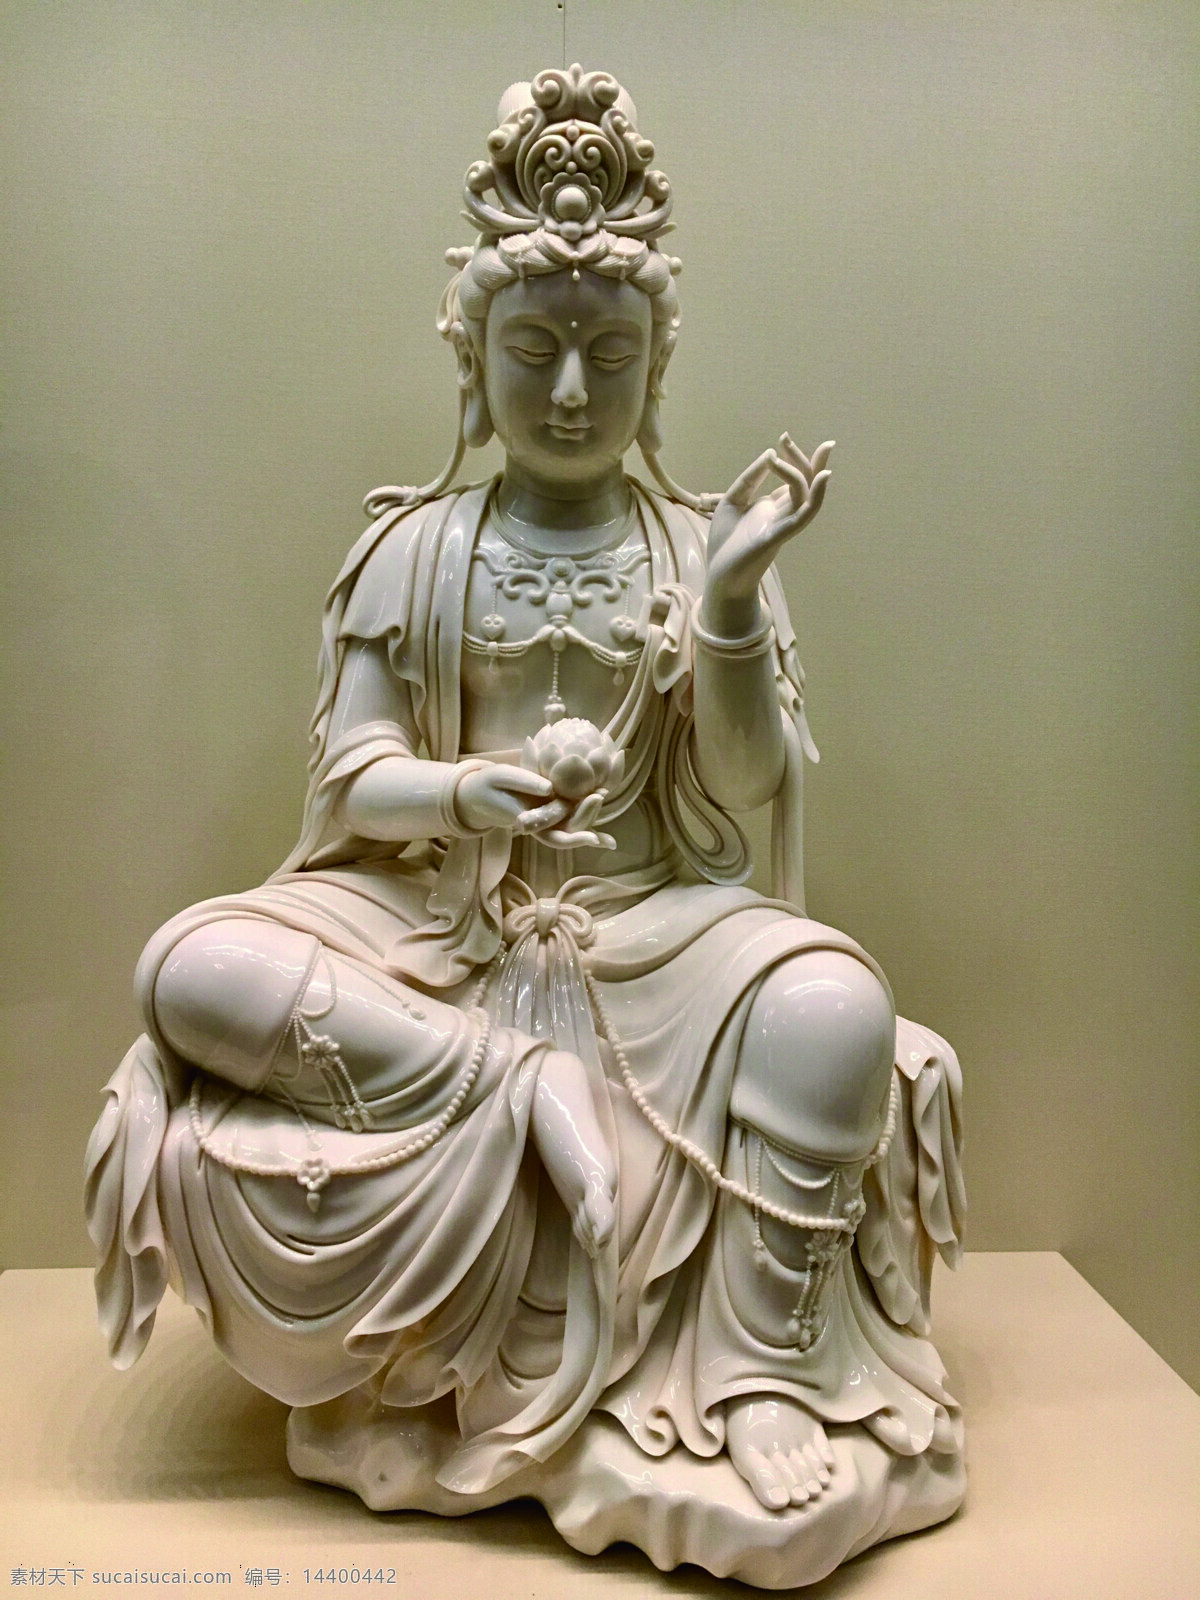 白瓷佛像 佛像 工艺品 瓷器 中国 传统 文化 宗教 白瓷 文化艺术 传统文化